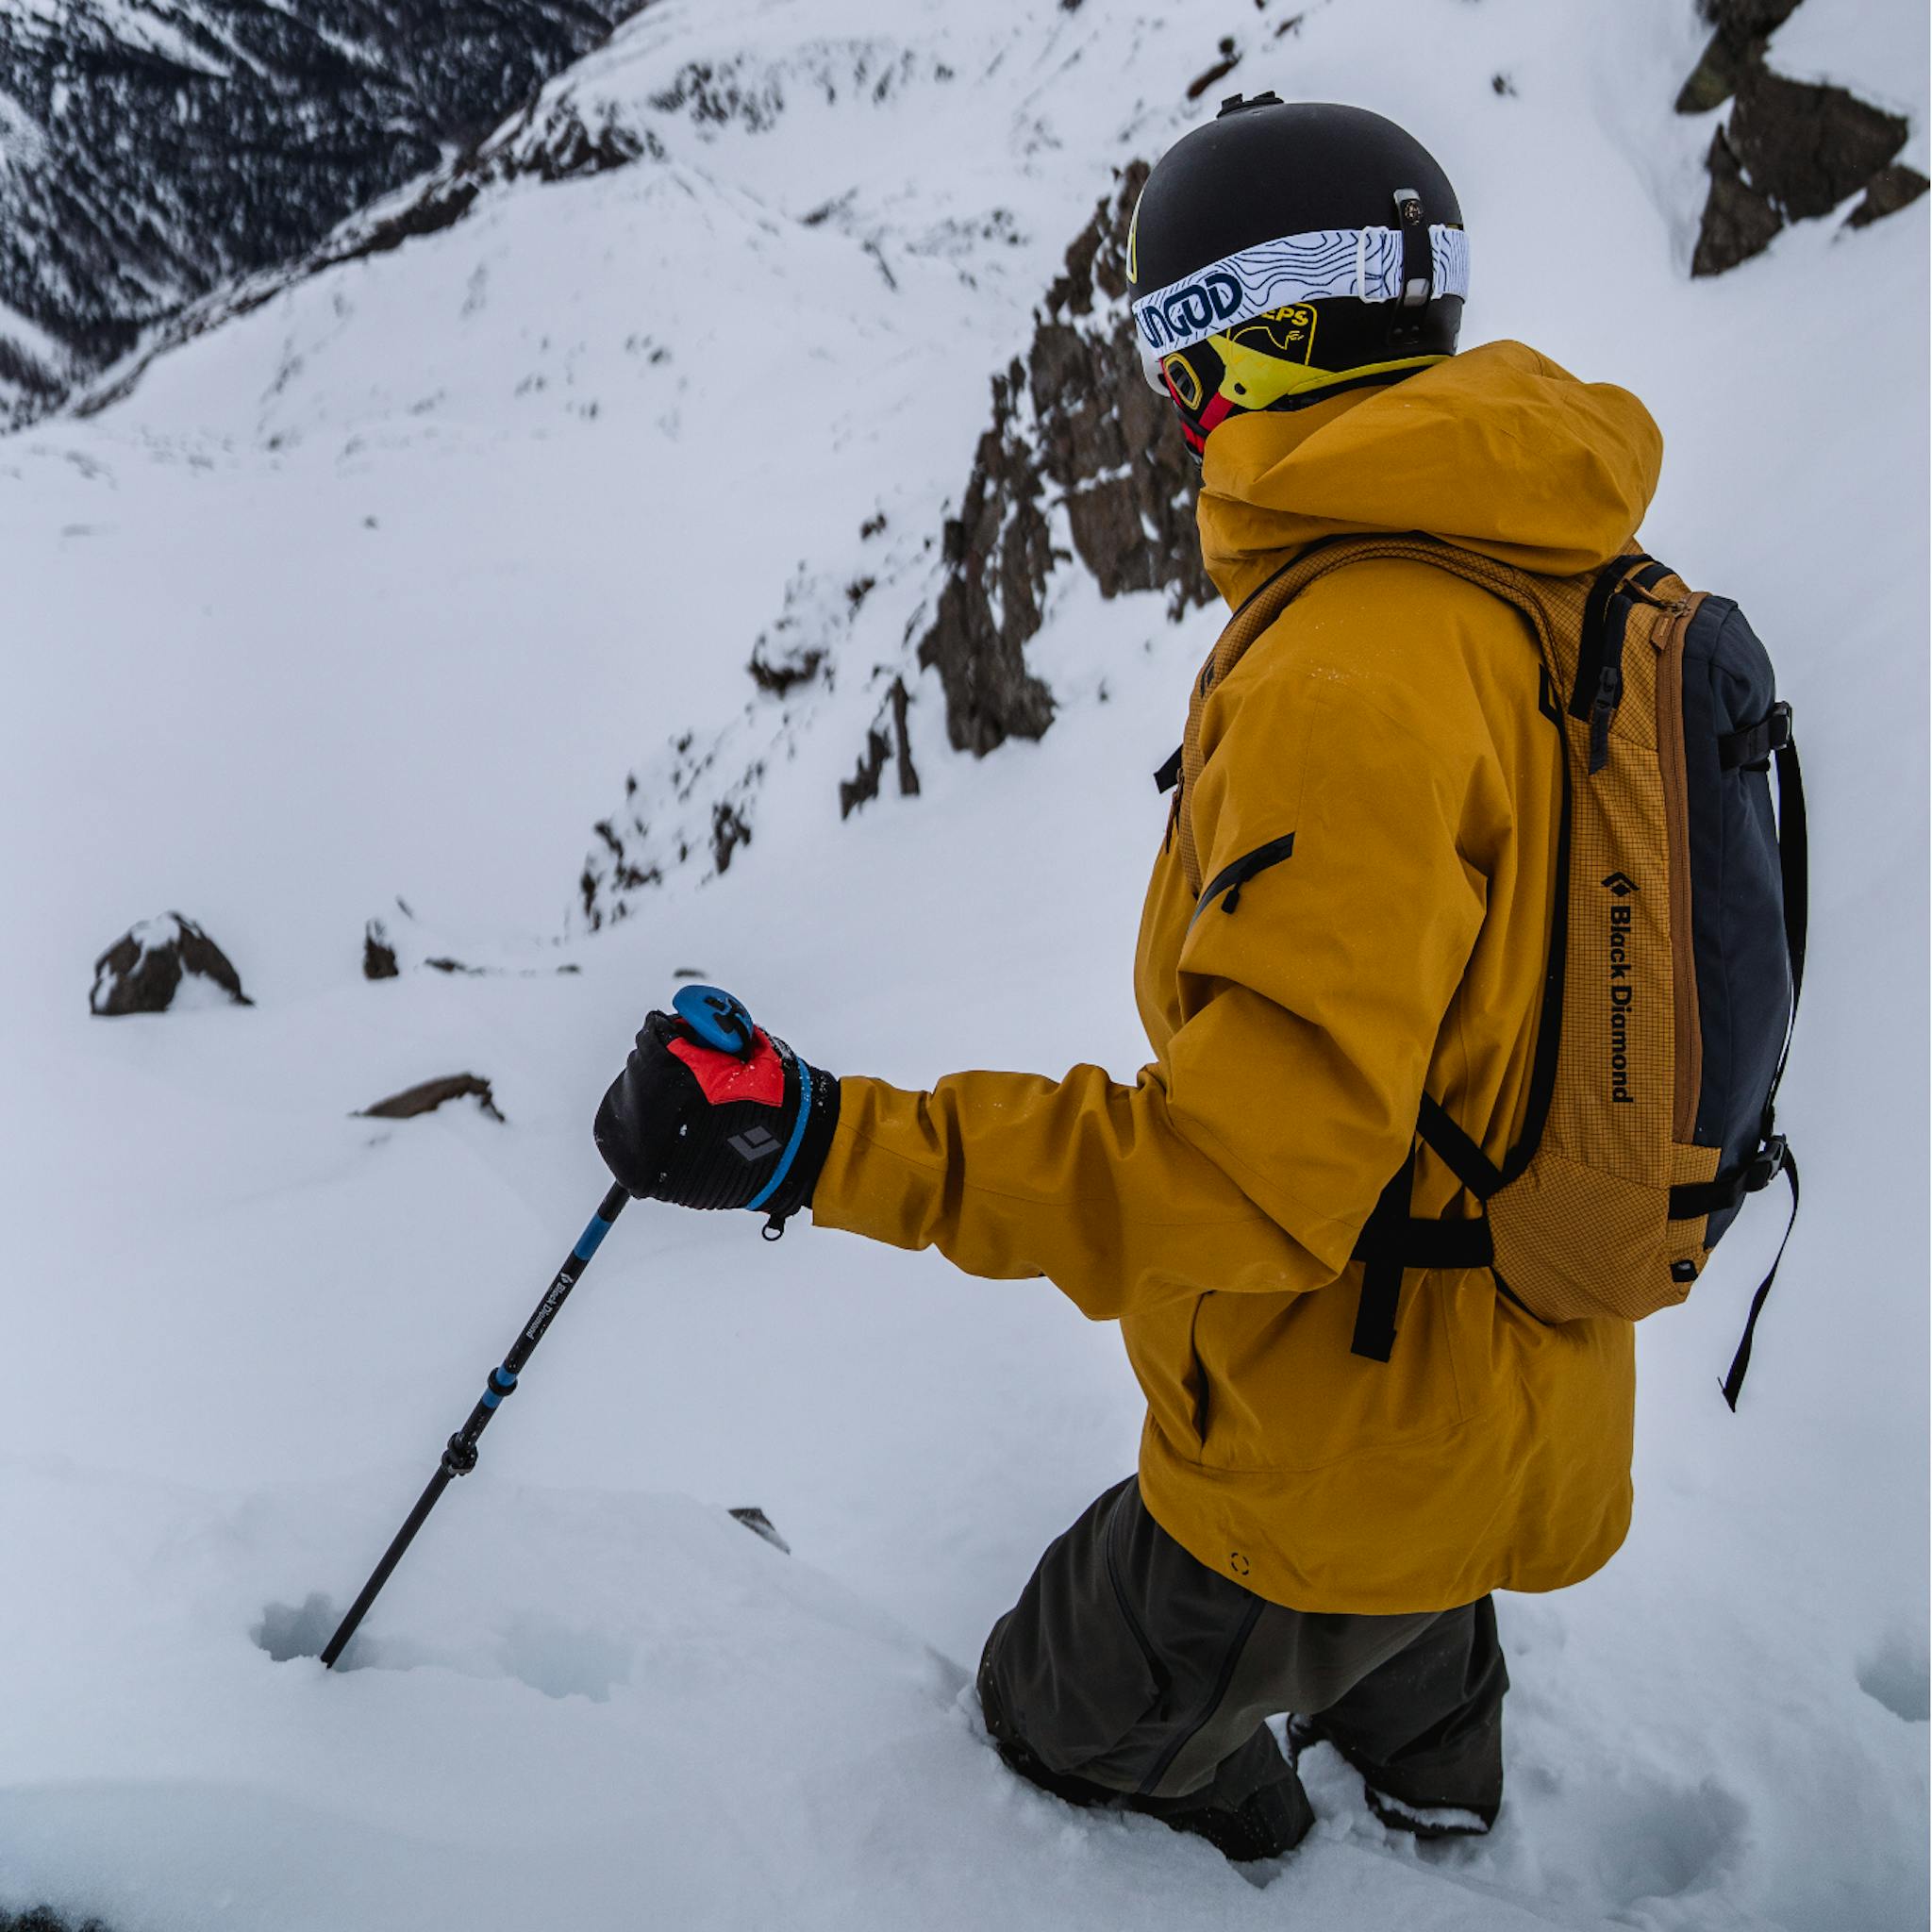 Un skieur portant la coque de ski Recon Stretch.